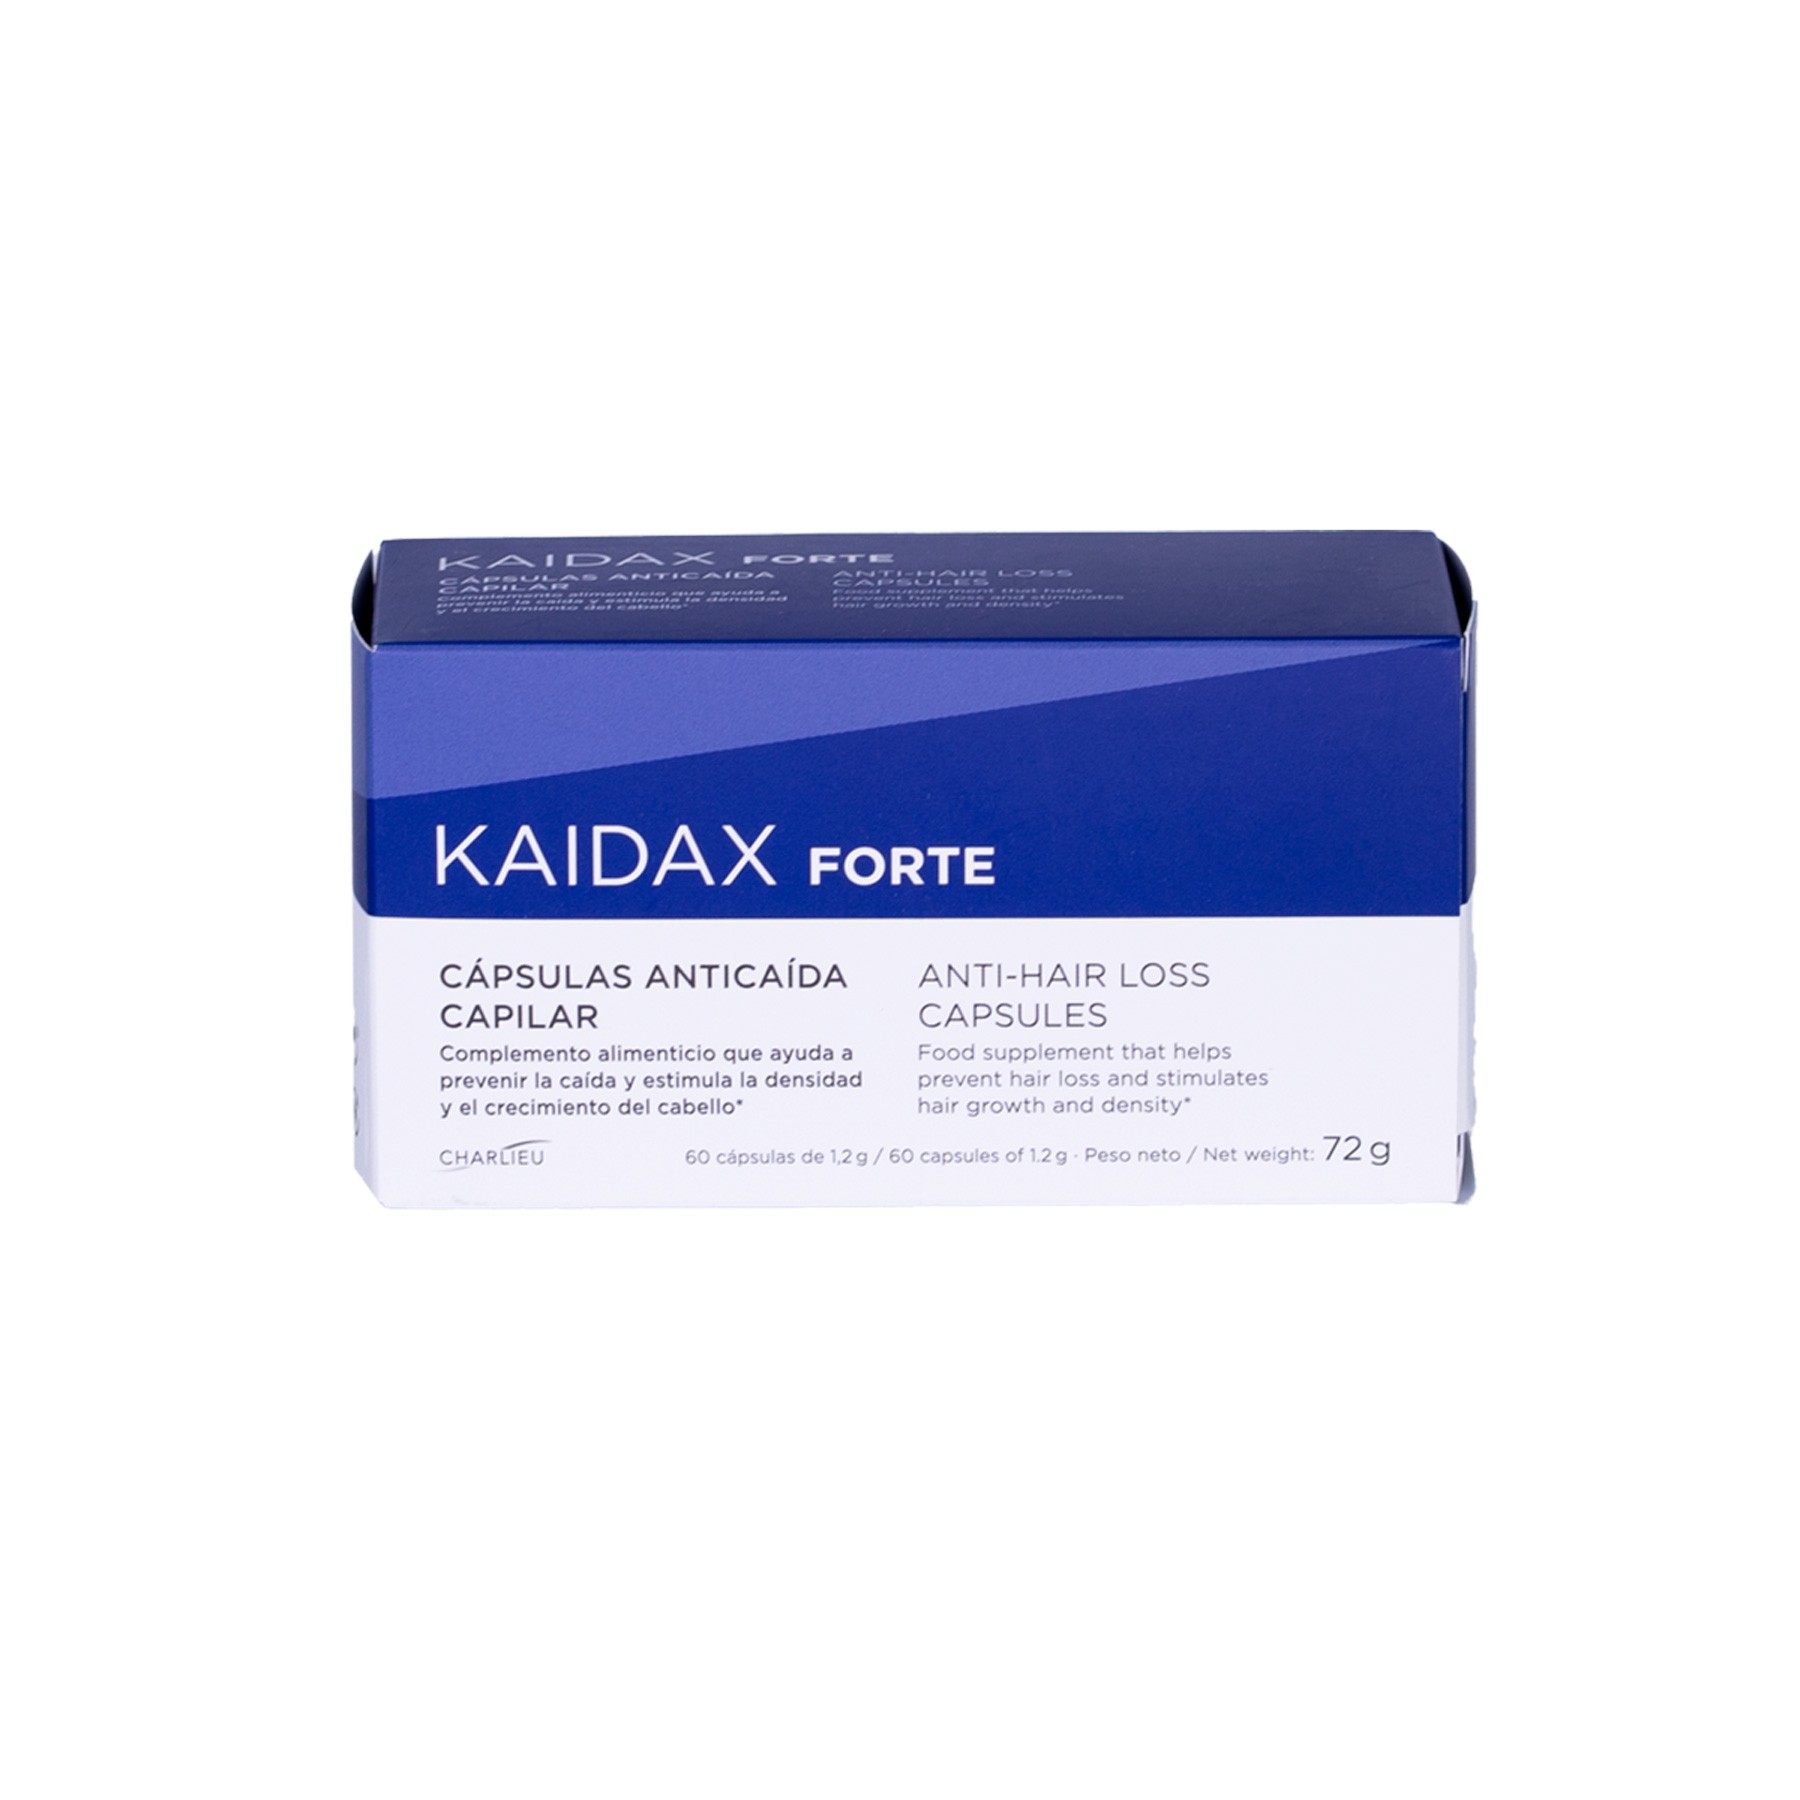 Kaidax forte anticaida 60 cápsulas